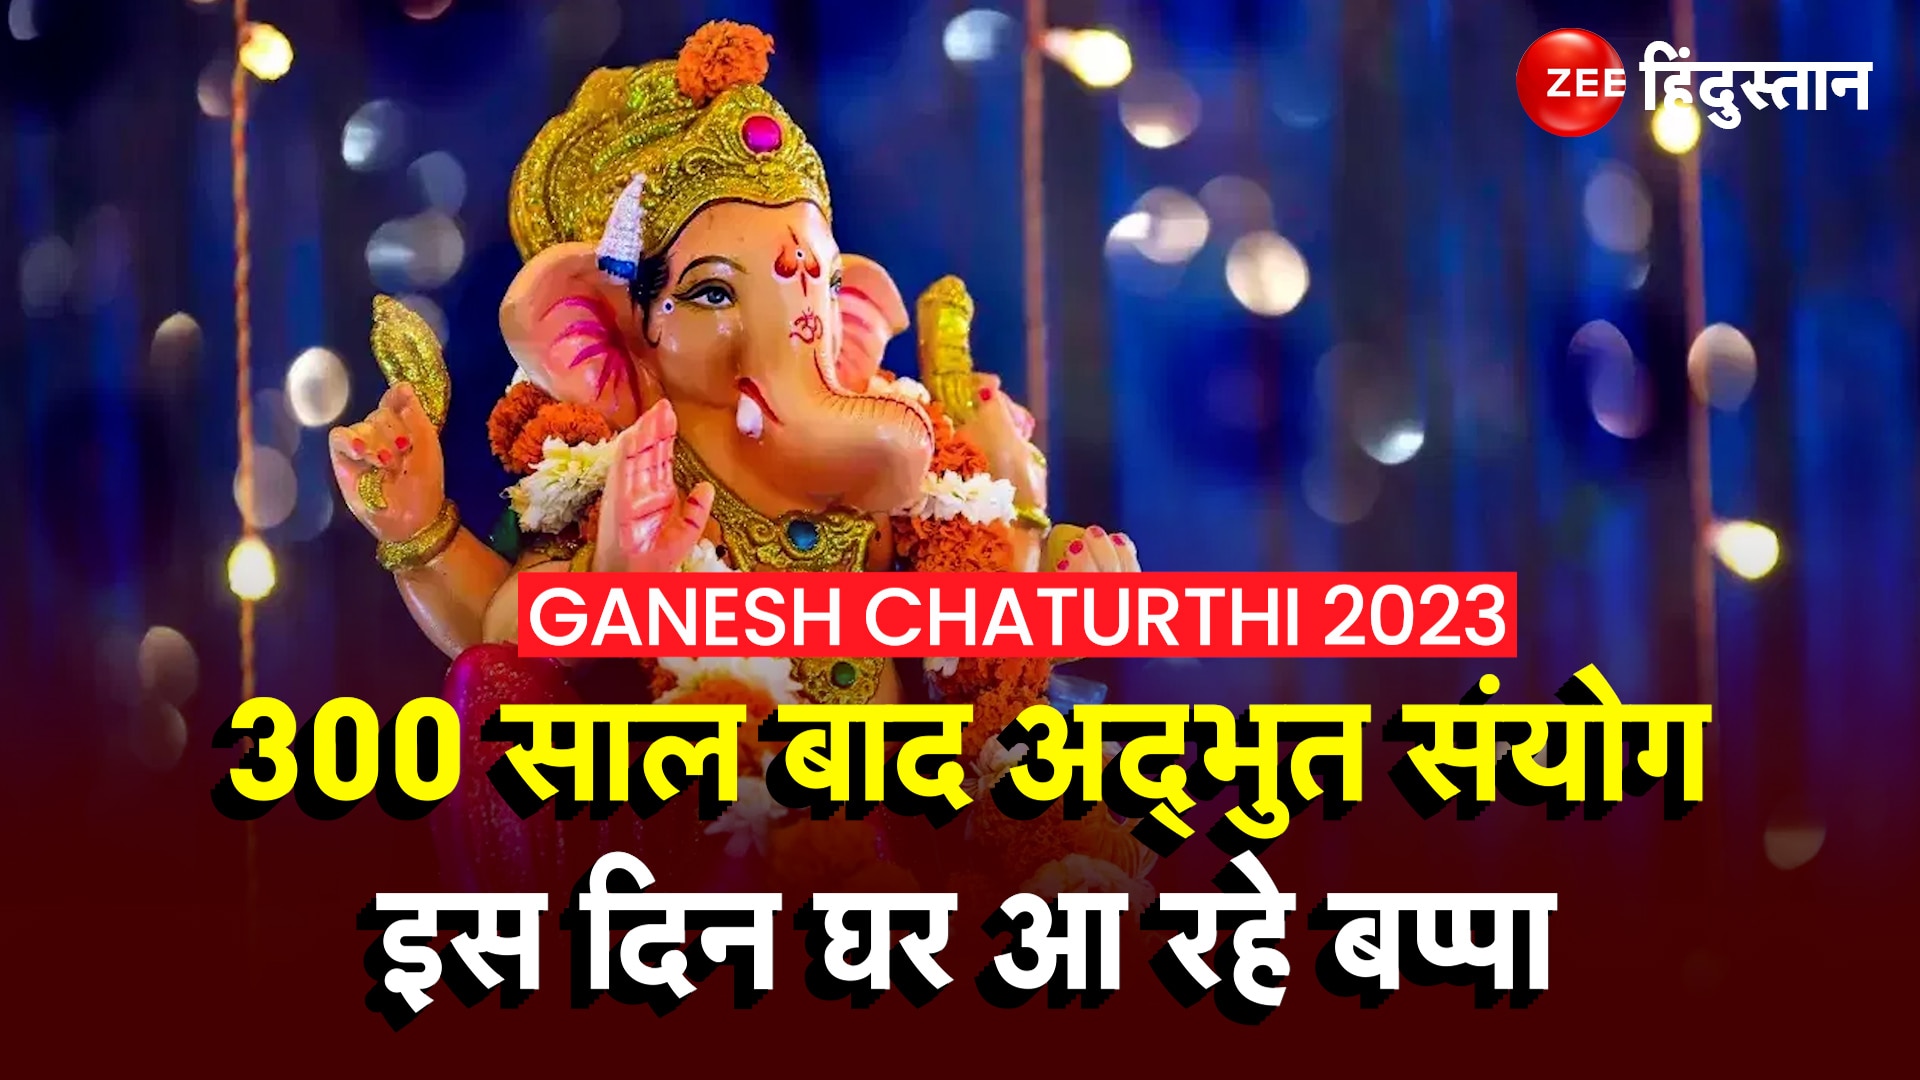 Ganesh Chaturthi 2023 Date Shubh Muhurat Time Yog And Ganpati Bappa Sthapna Mahatva Ganesh 2120